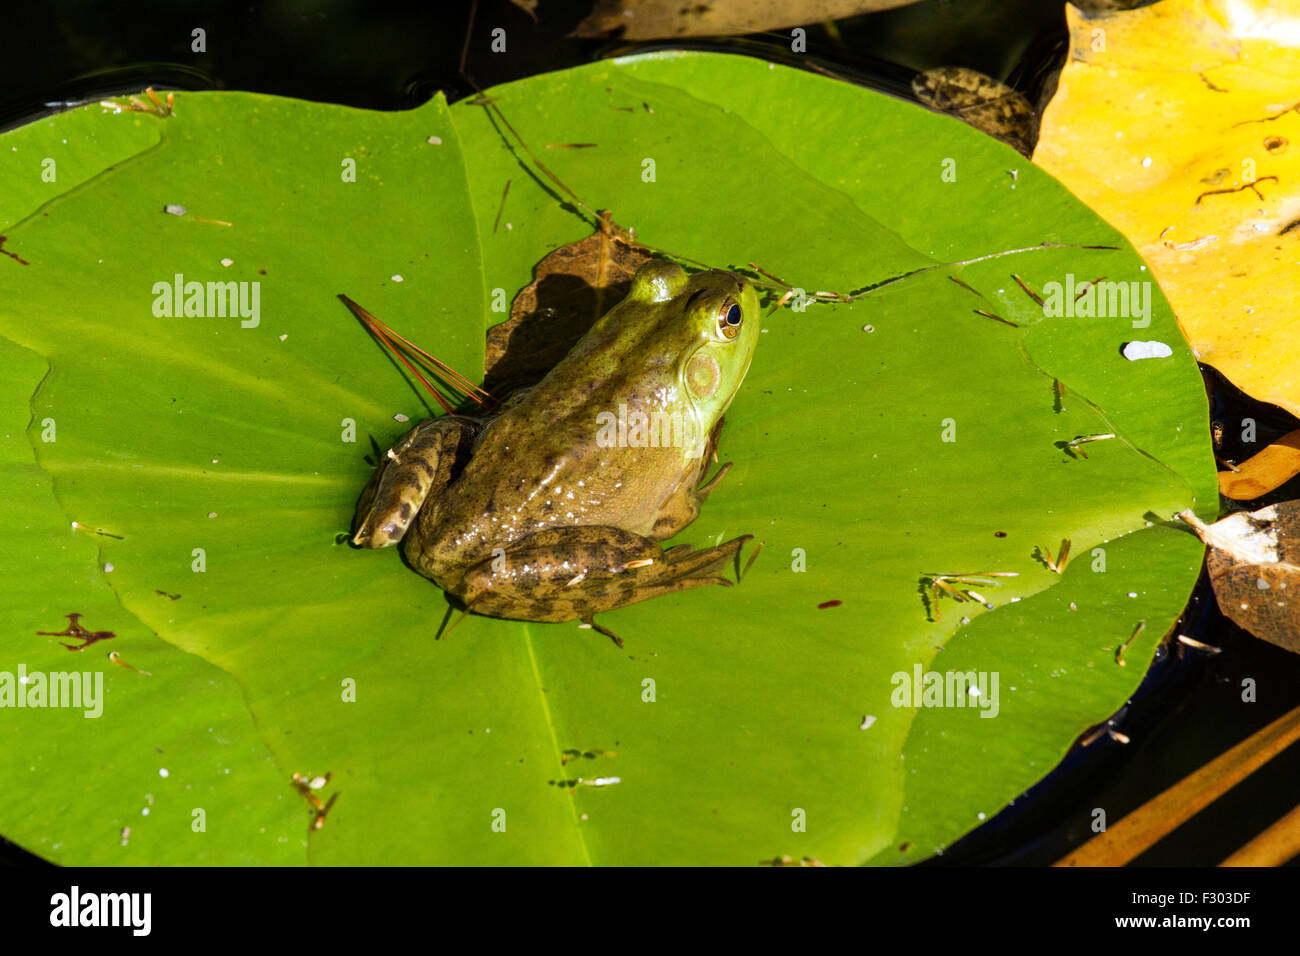 Una rana sentada sobre una hoja de lirio verde Foto de stock